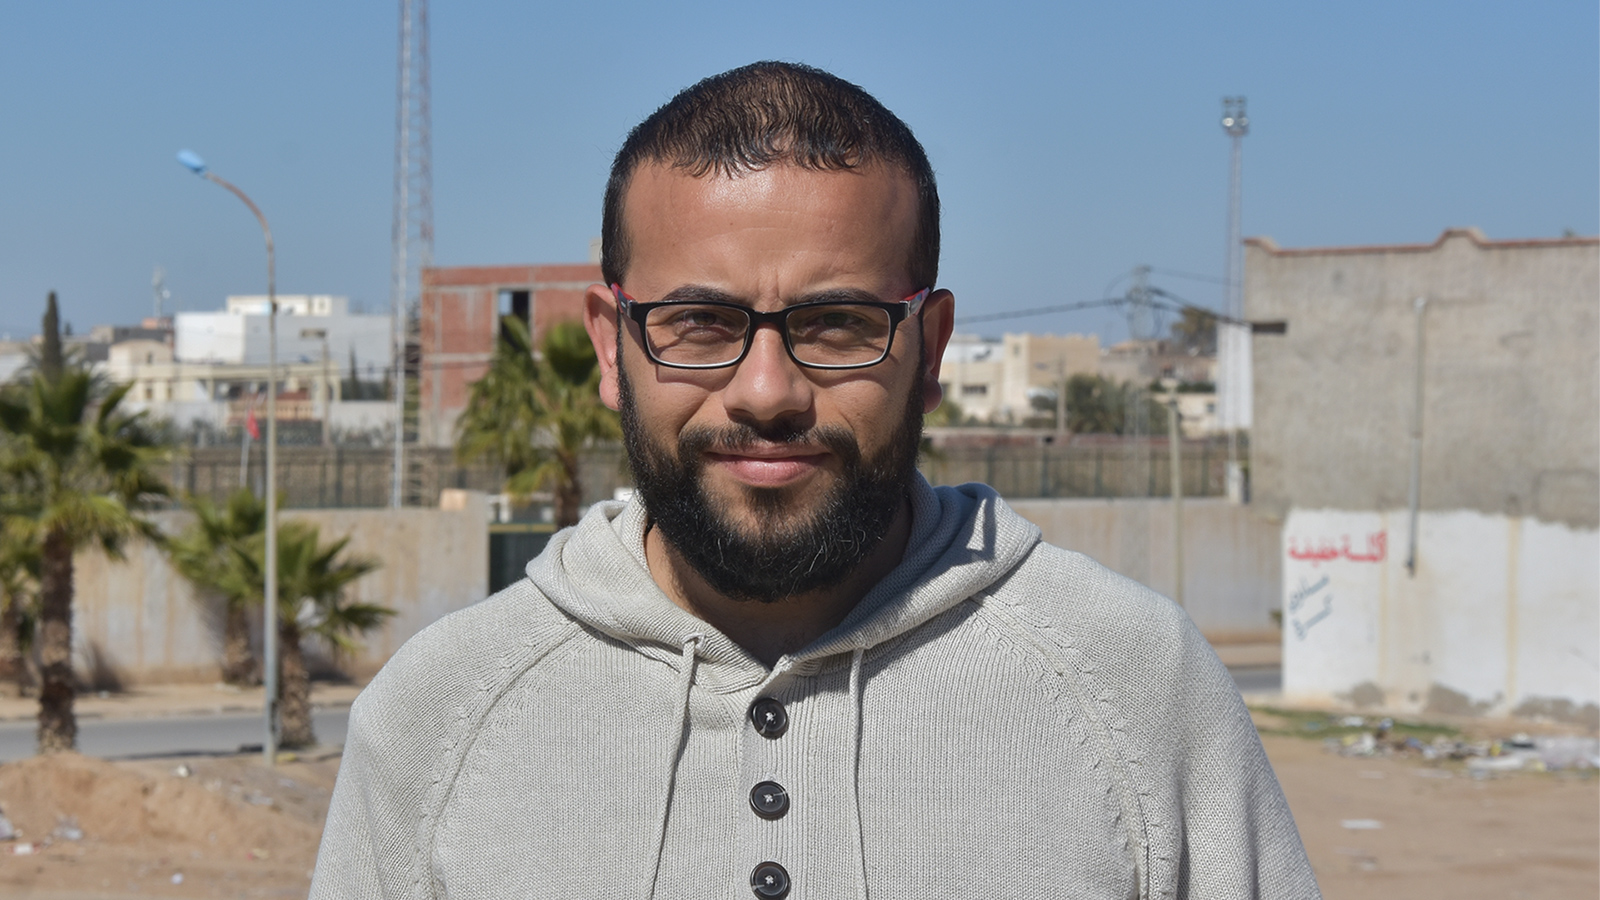 ‪صماري: بعد الثورة كسر المدونون حاجز الخوف‬ صماري: بعد الثورة كسر المدونون حاجز الخوف (الجزيرة)